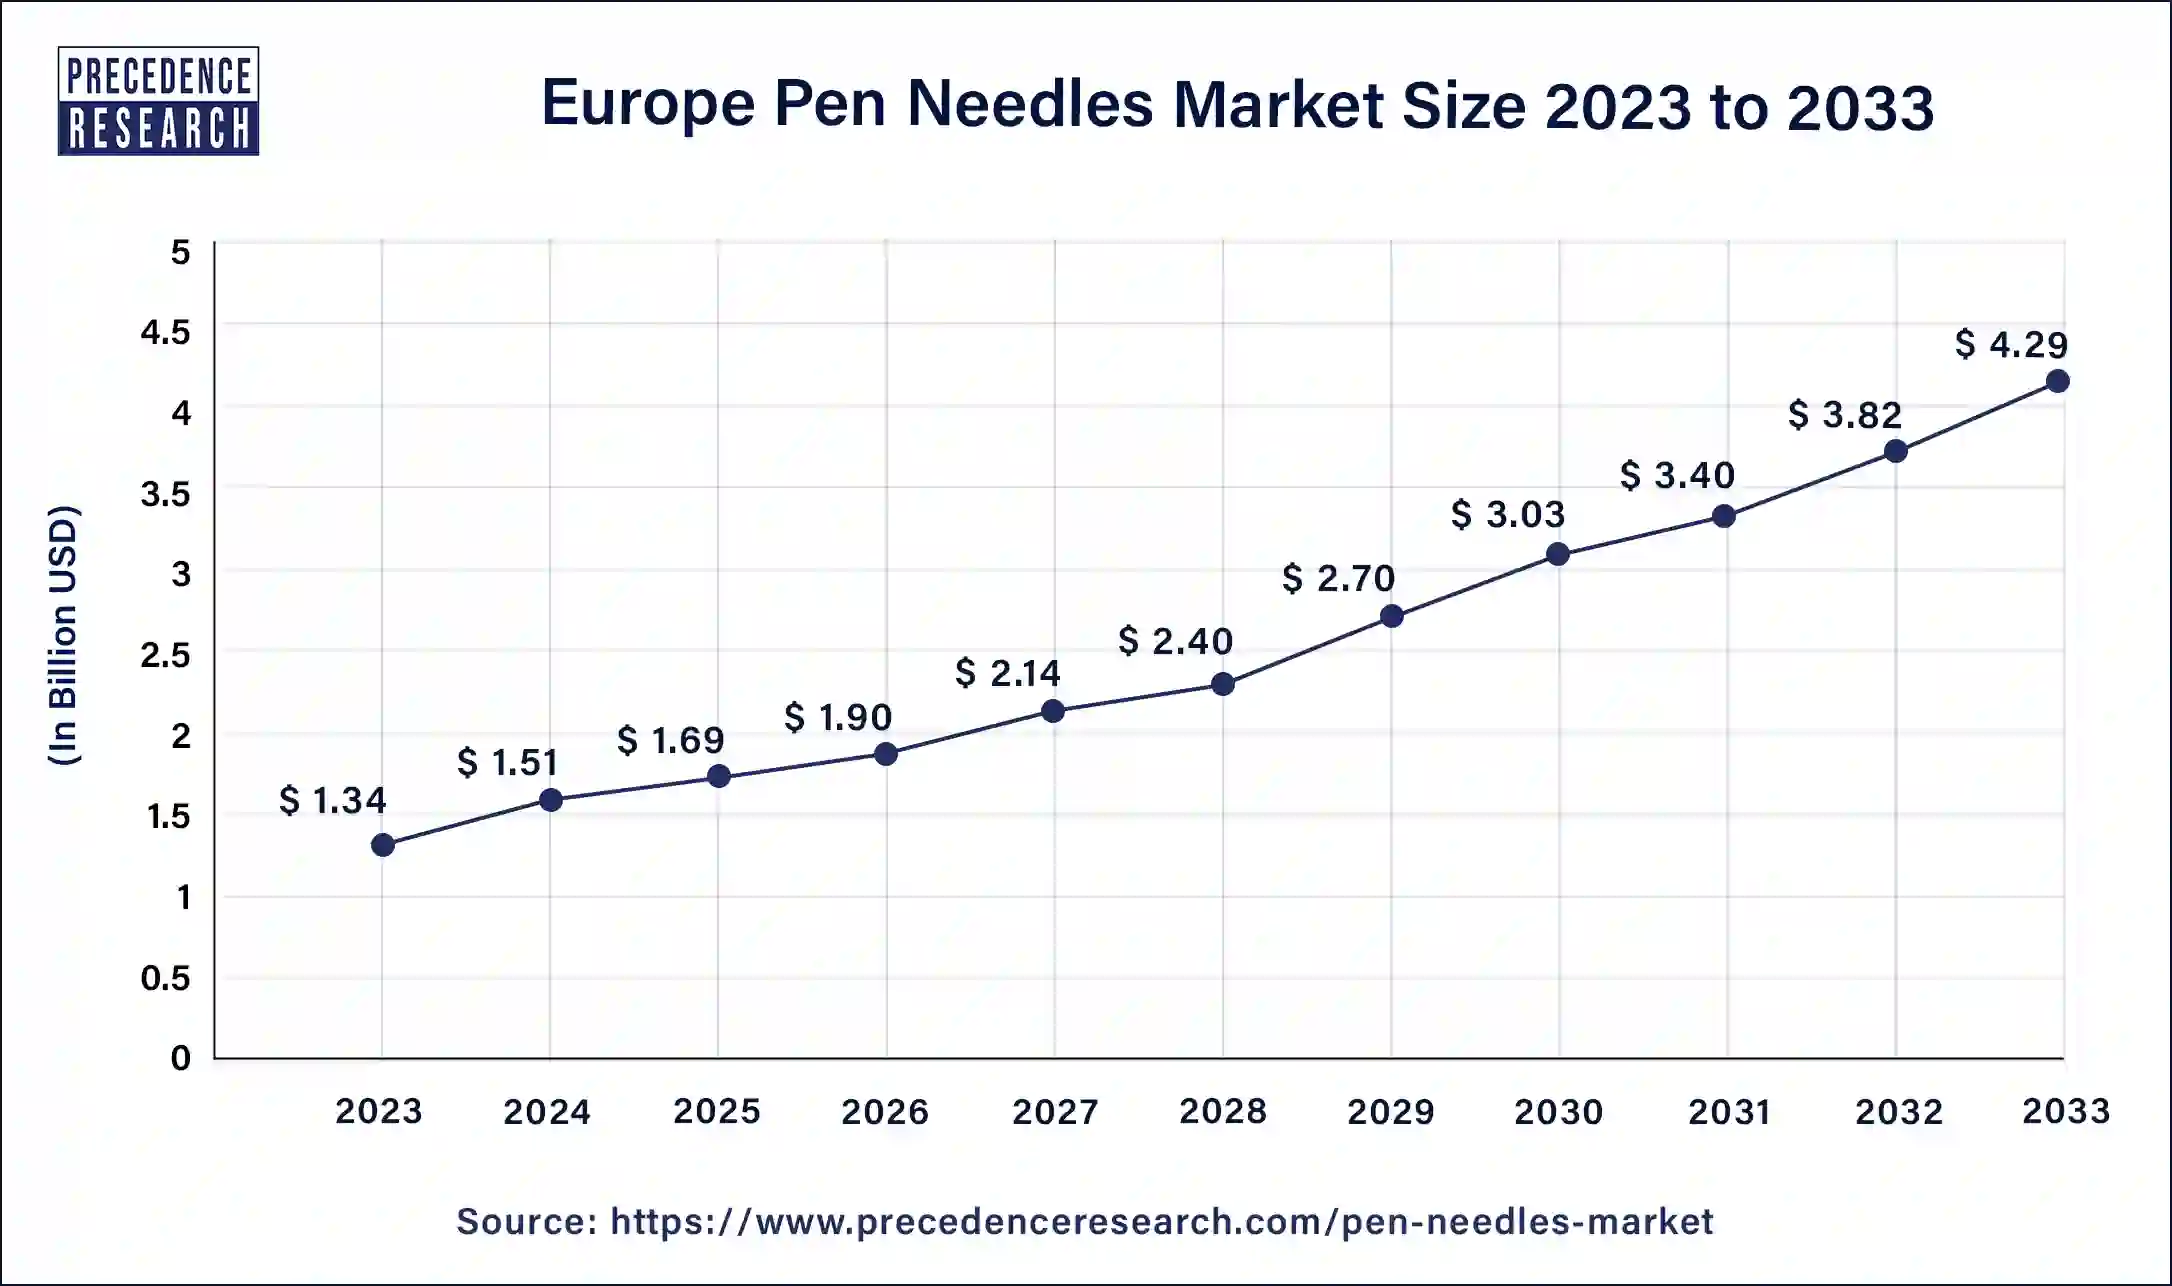 Europe Pen Needles Market Size 2024 to 2033